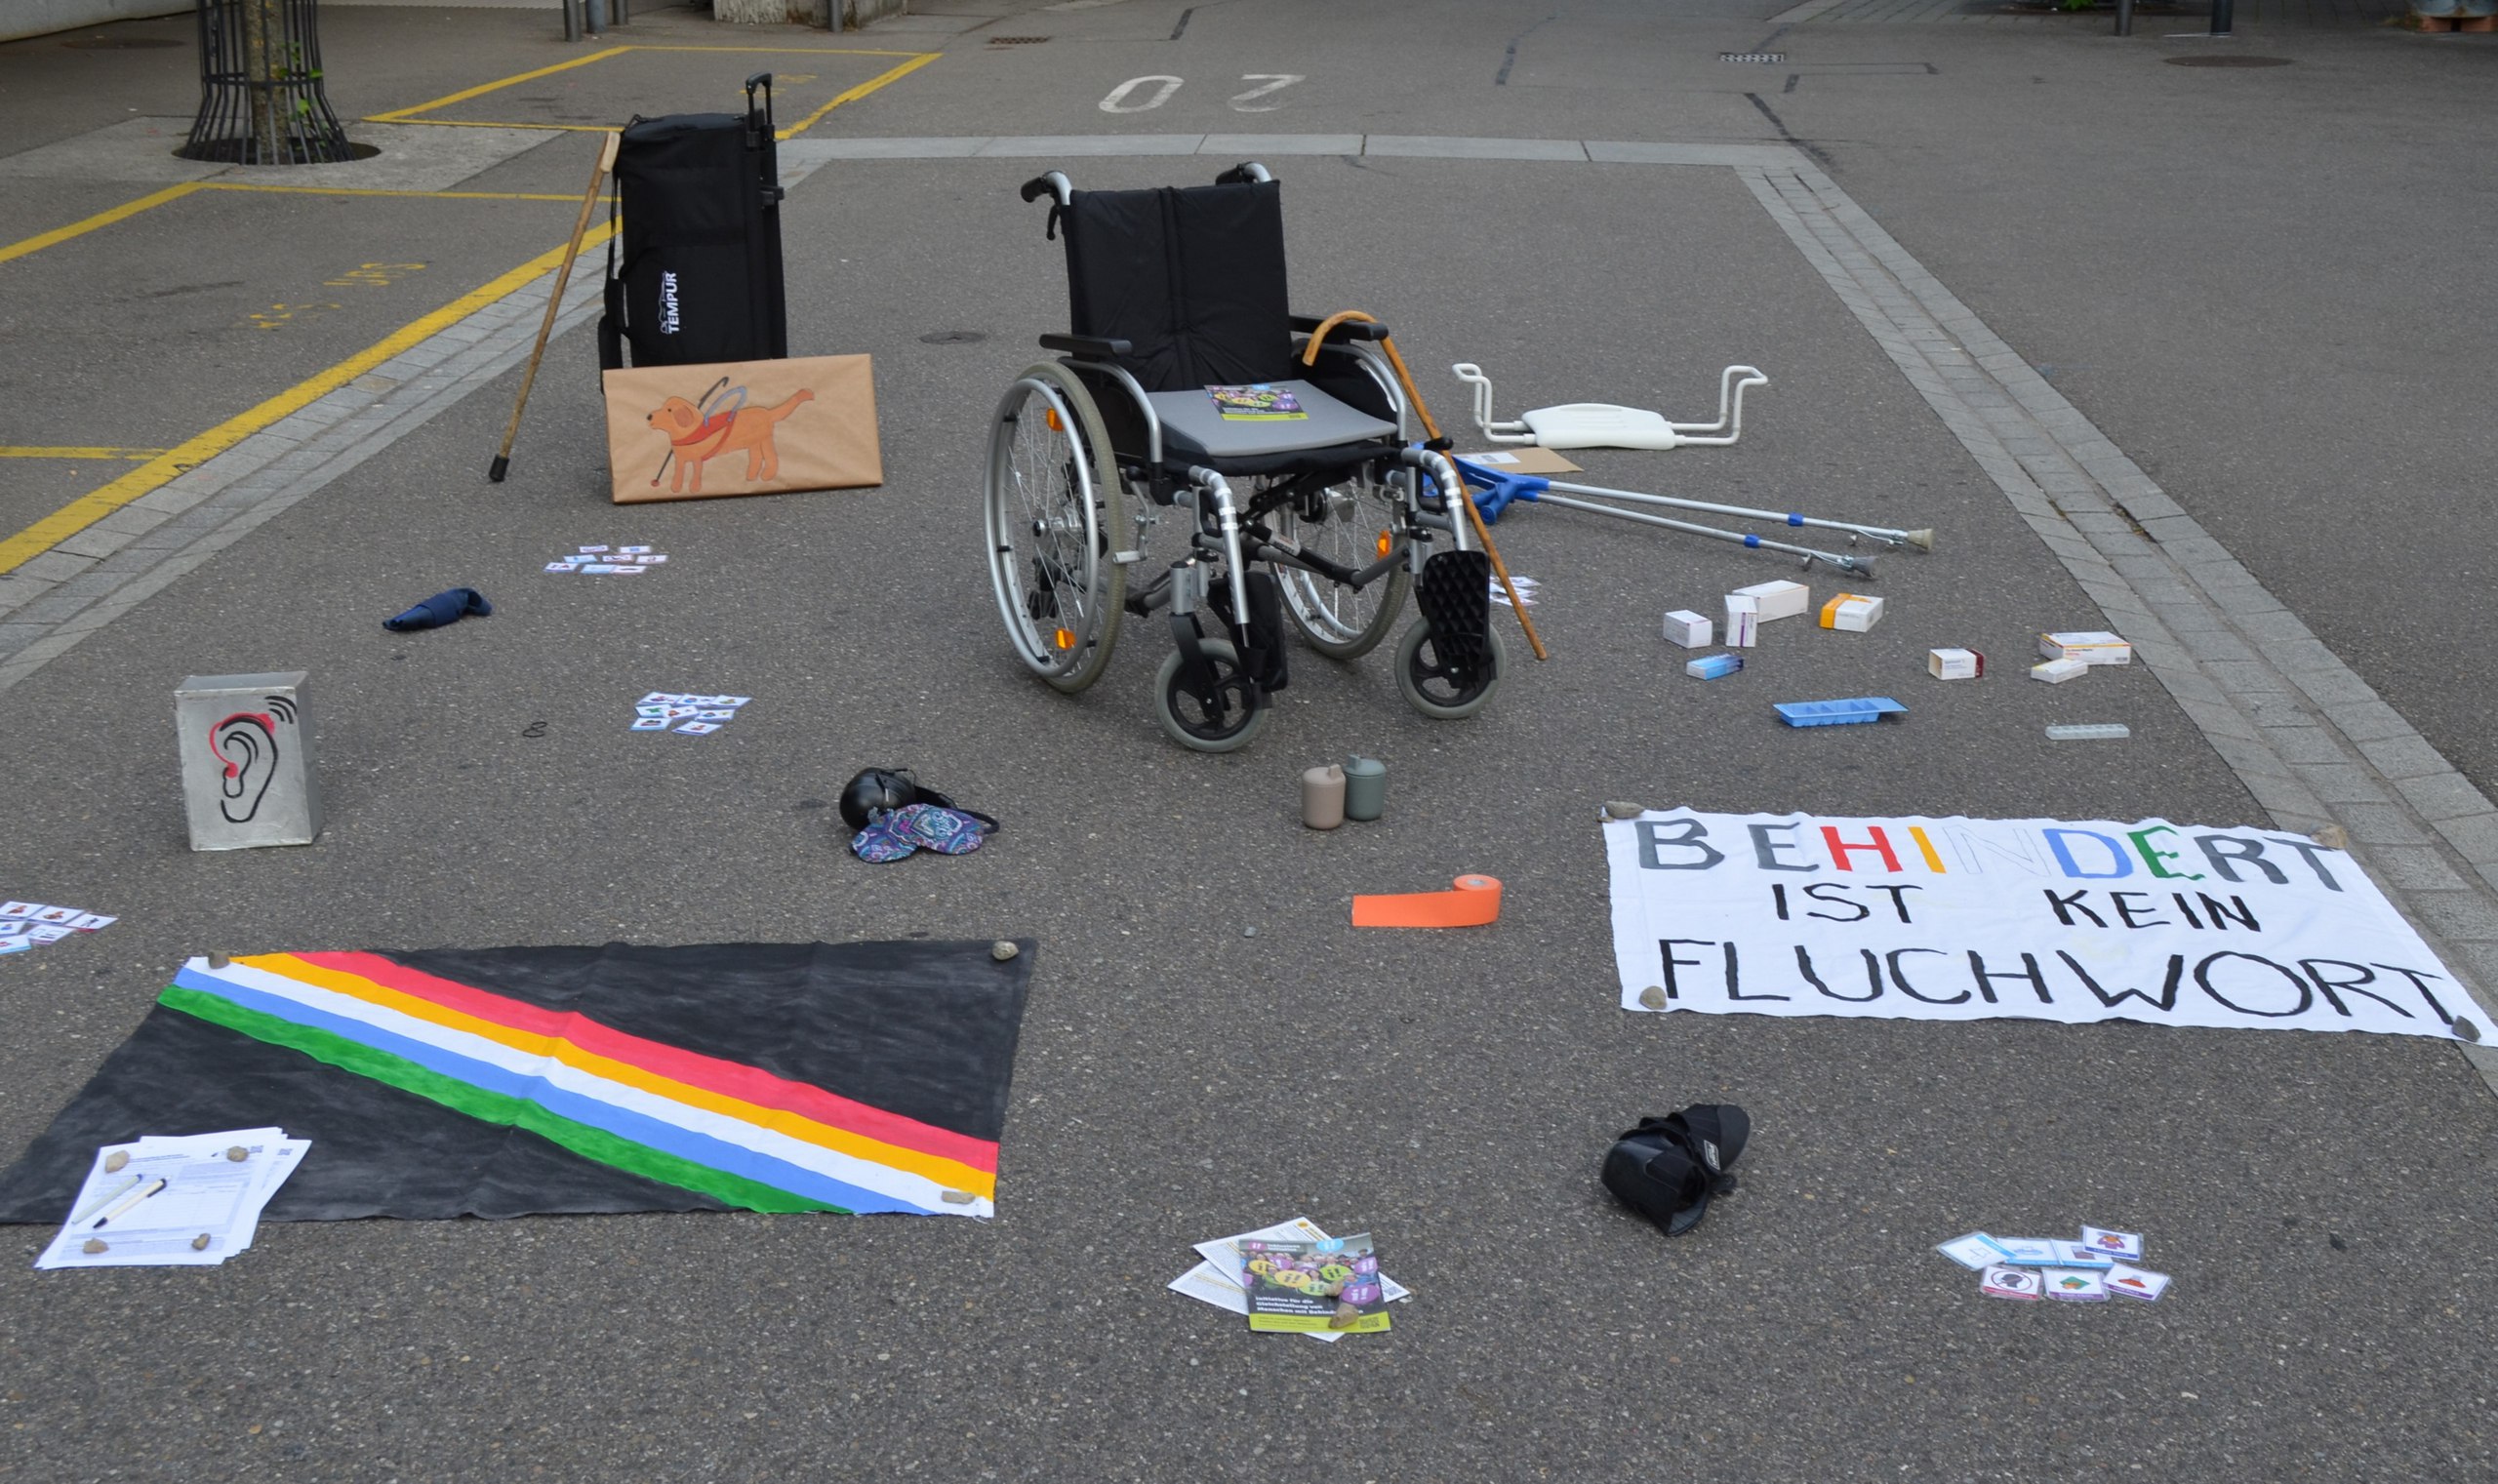 "Behindert ist kein Fluchwort" steht auf einem Transparent neben verschiedensten Hilfsgegenständen, die auf der Strasse verteilt liegen.